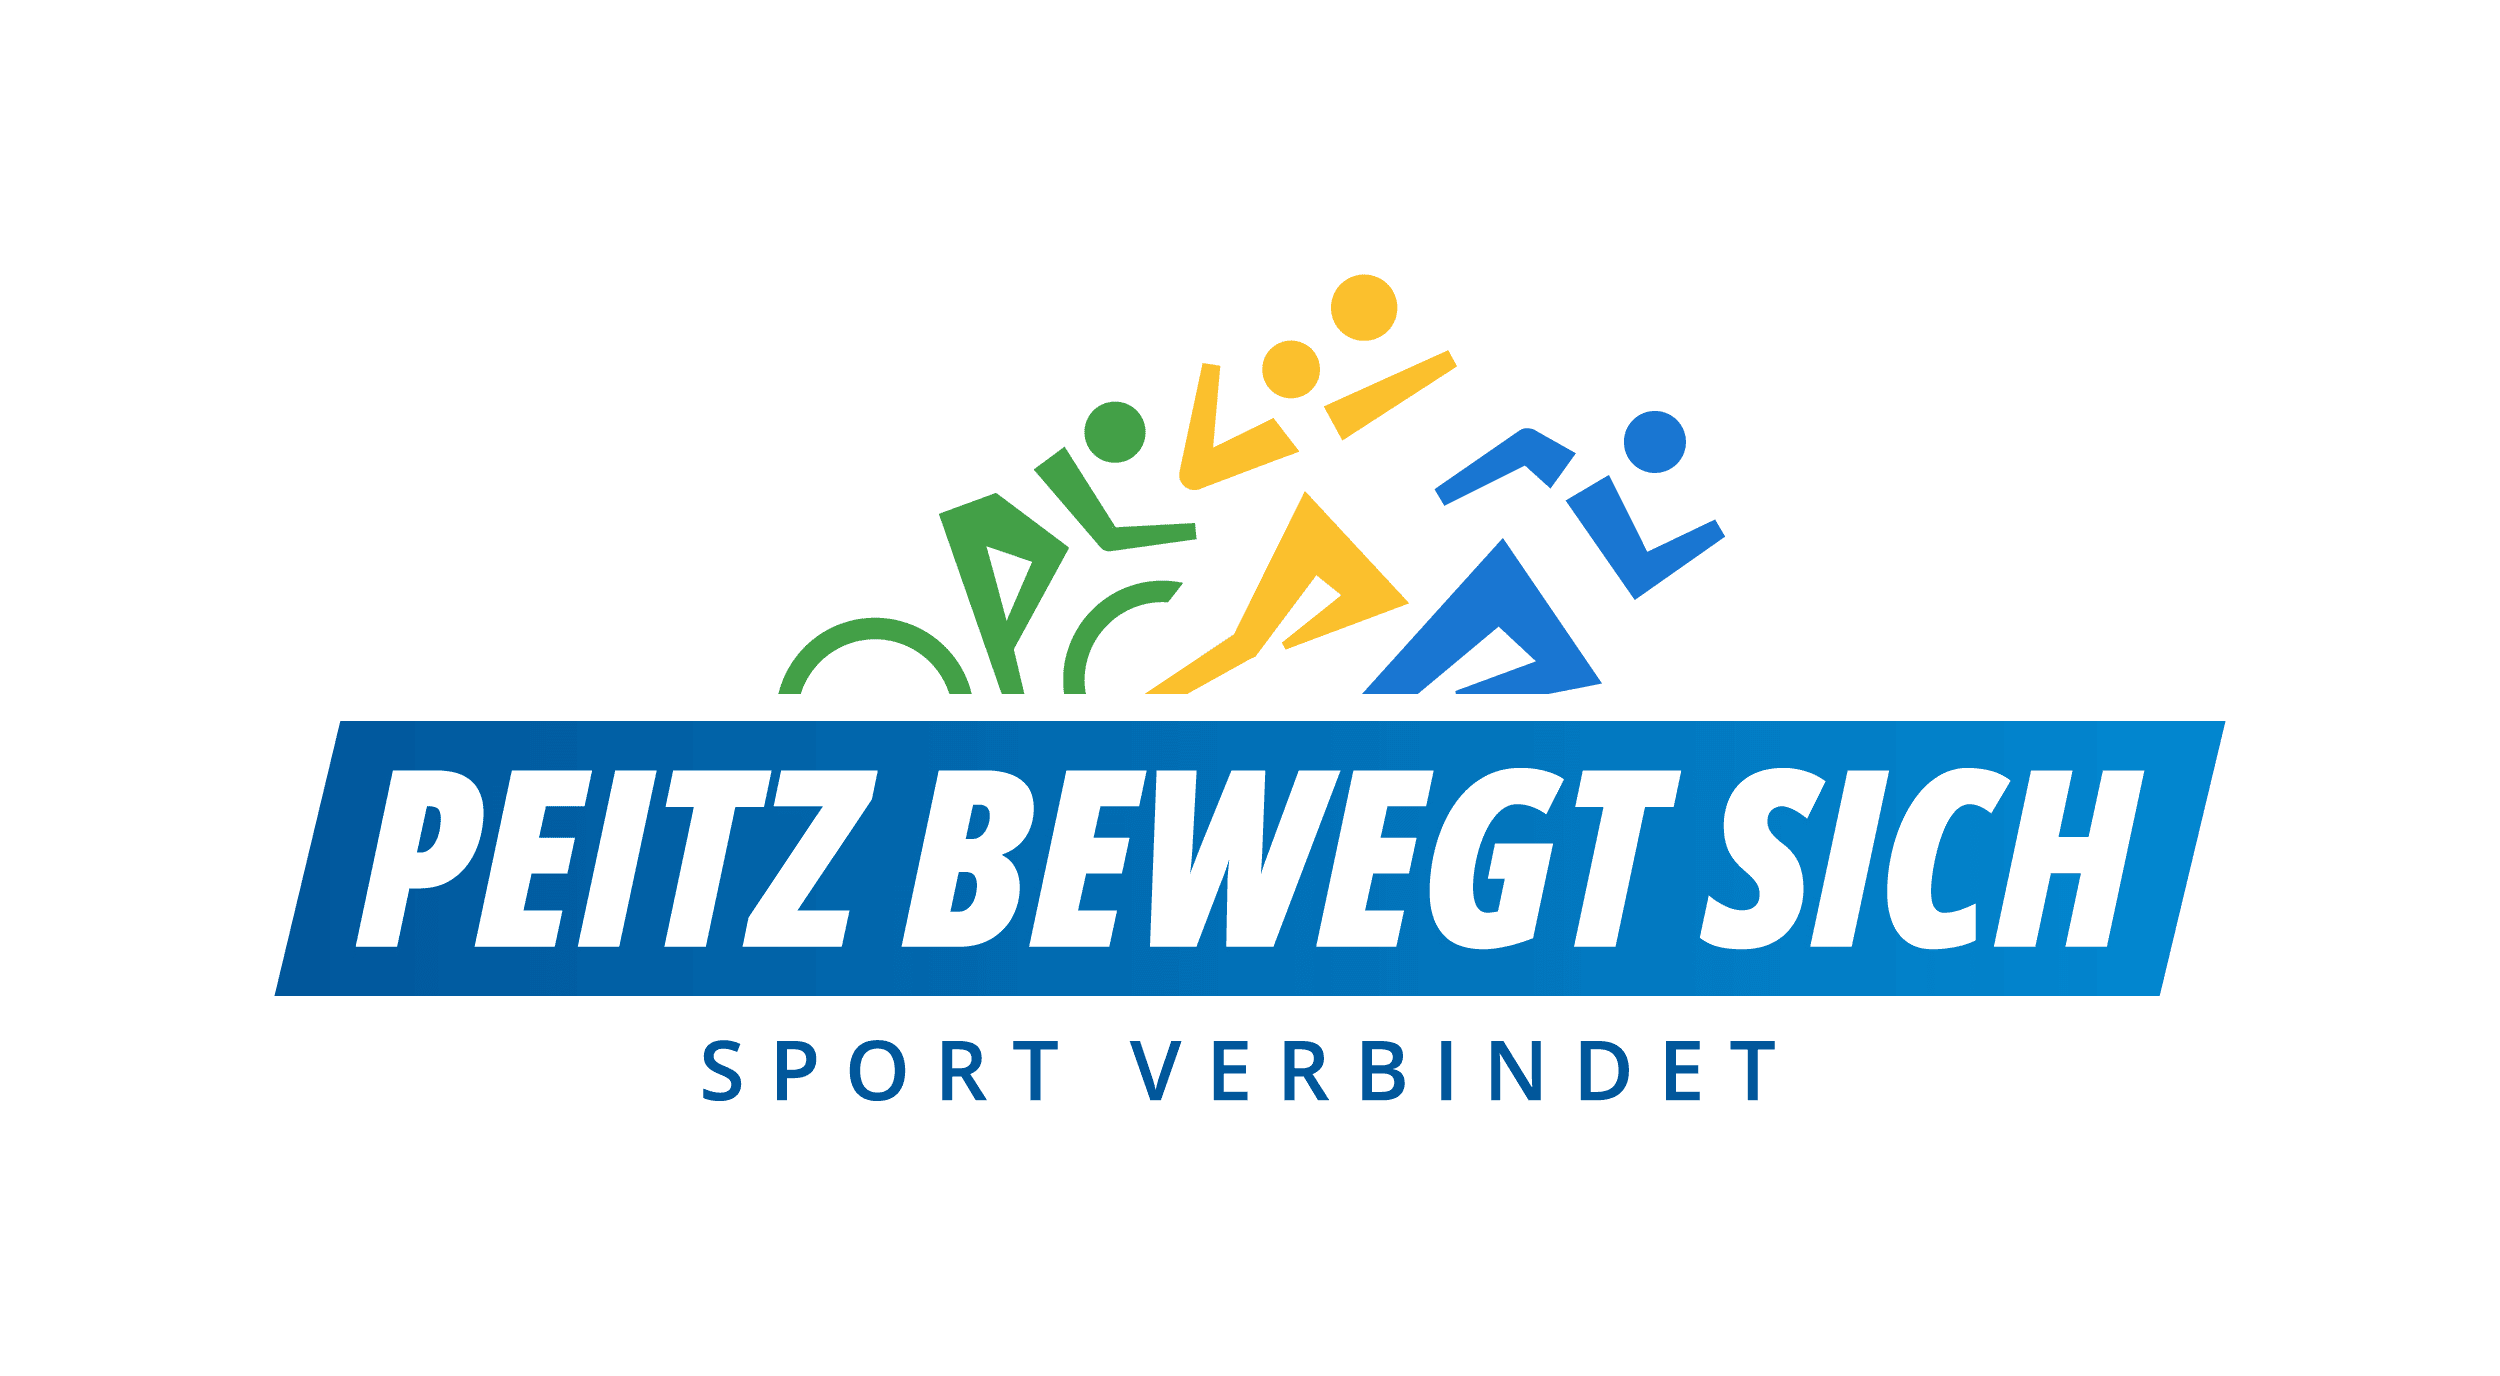 peitz_bewegt_sich_logo